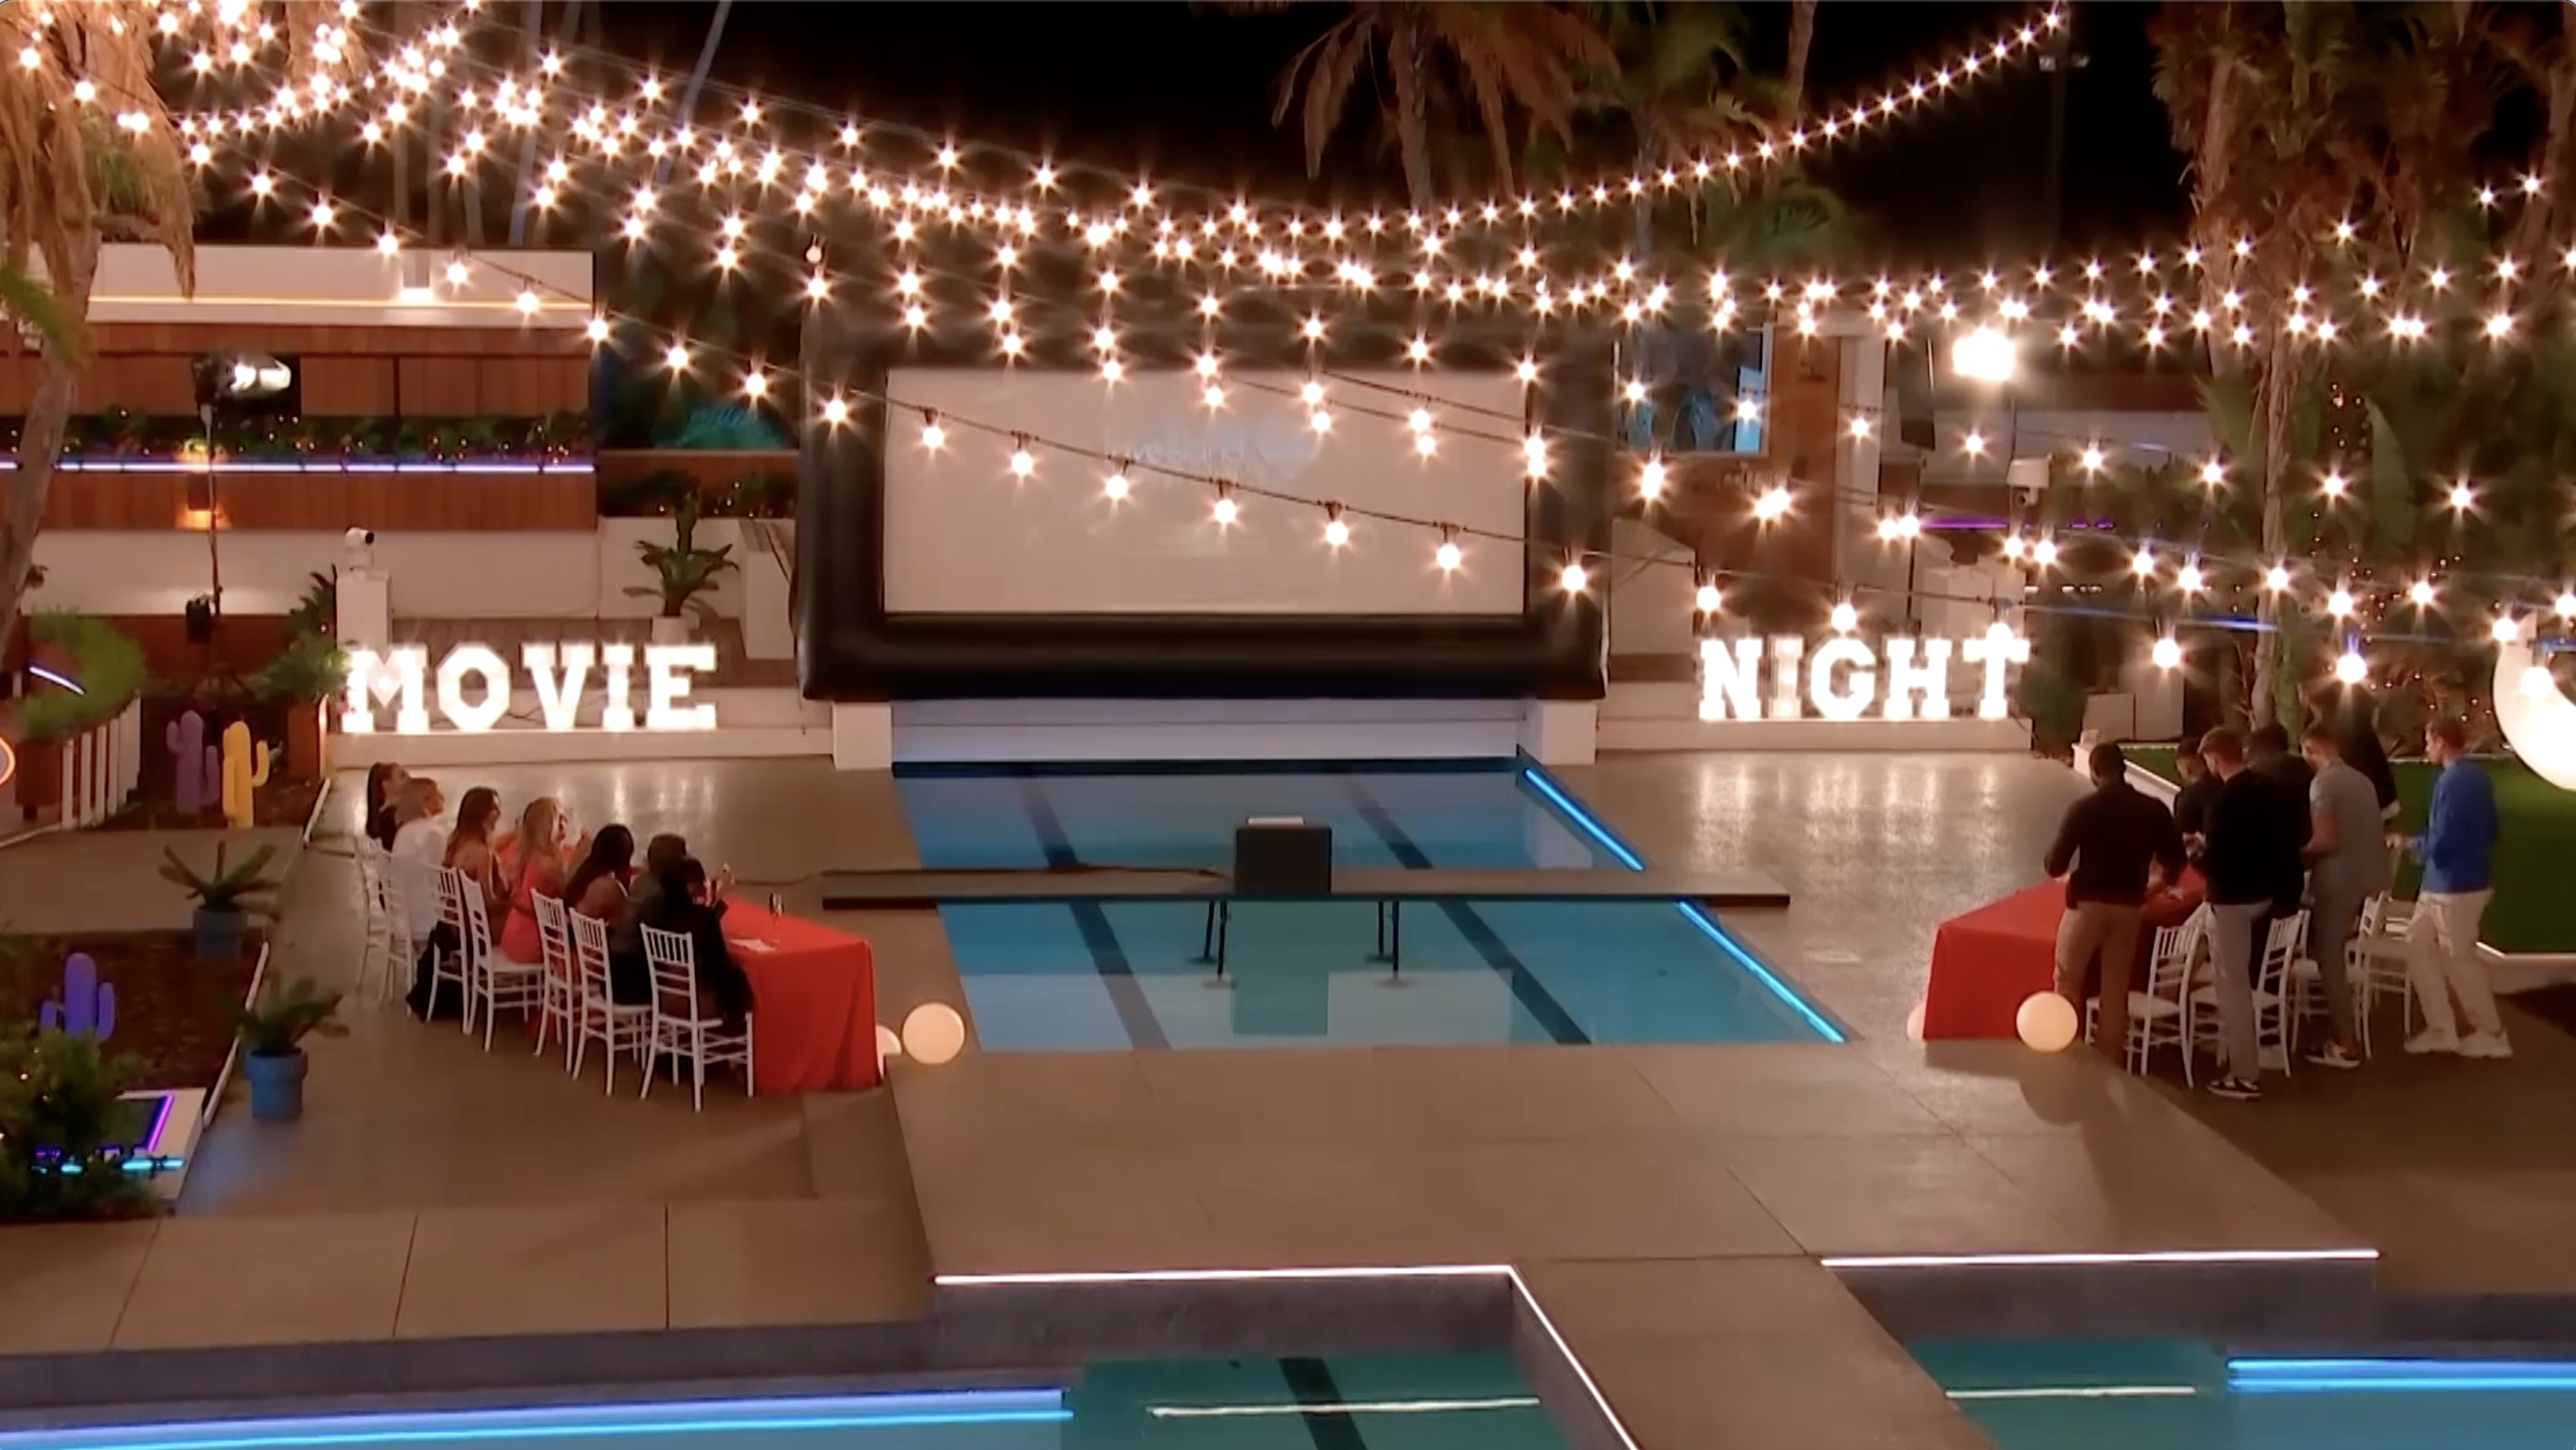 Love Island' 2023 traz de volta o clássico desafio 'Movie Night